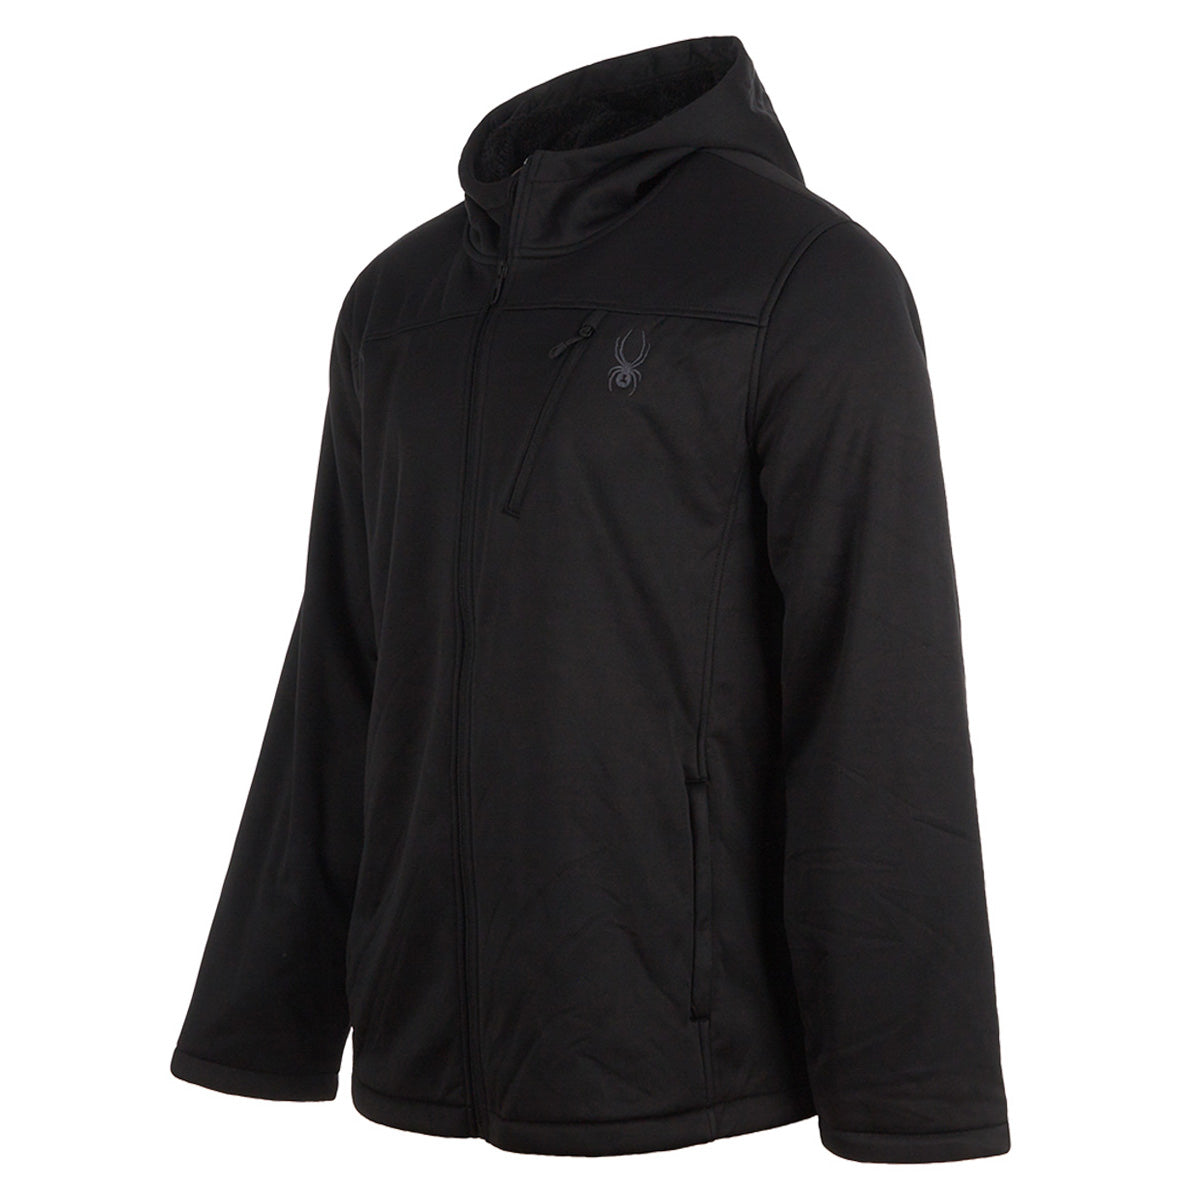 Spyder Men's Stealth Full Zip Hybrid Jacket, Color Options 